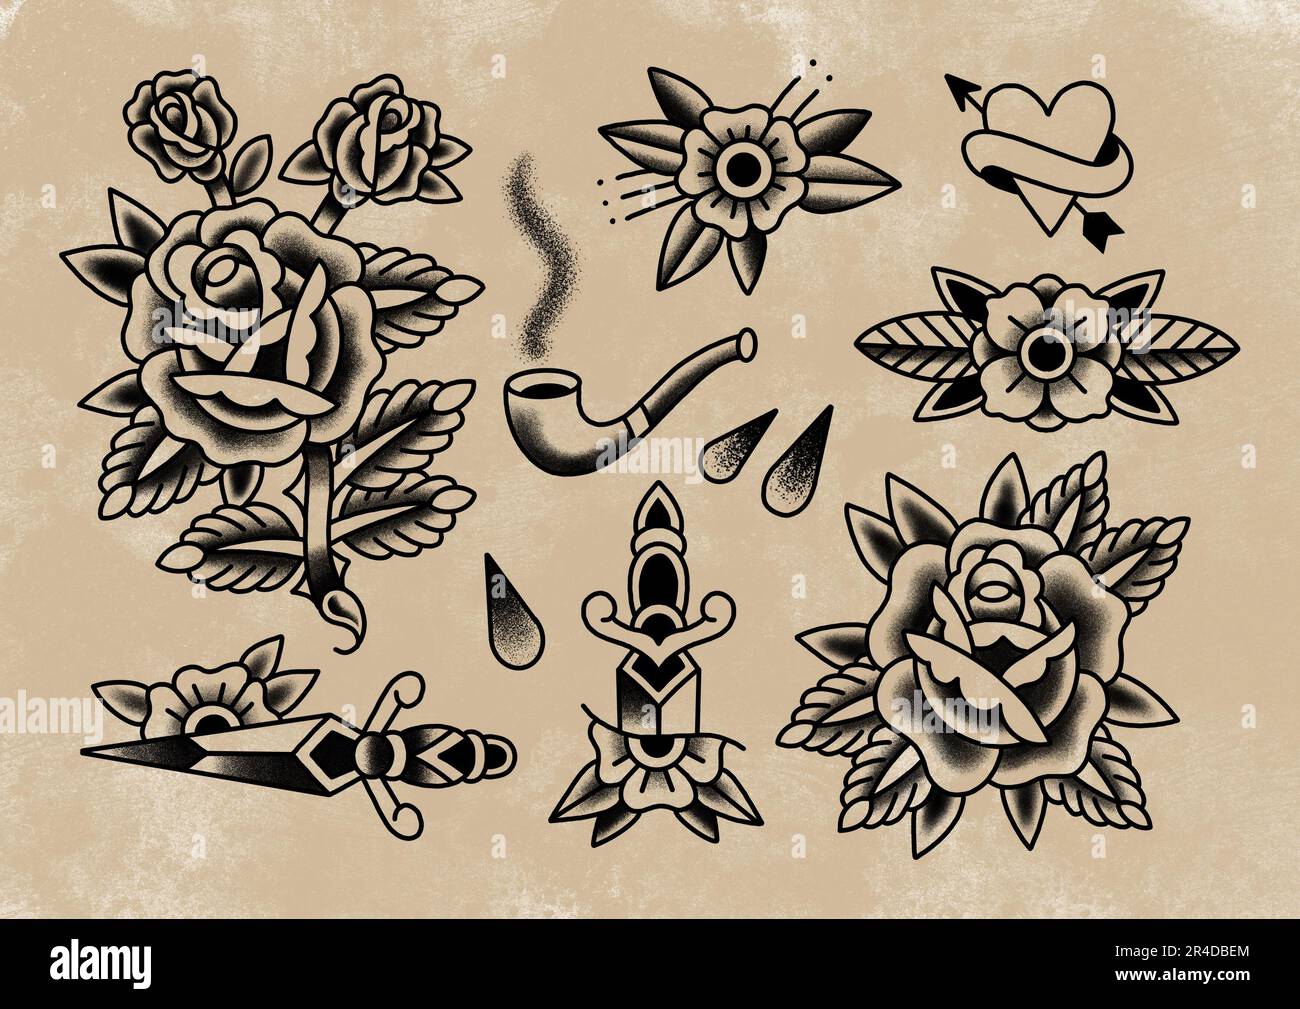 spooky flash sheet 🕷️ | Black ink tattoos, Traditional tattoo old school, Flash  tattoo designs